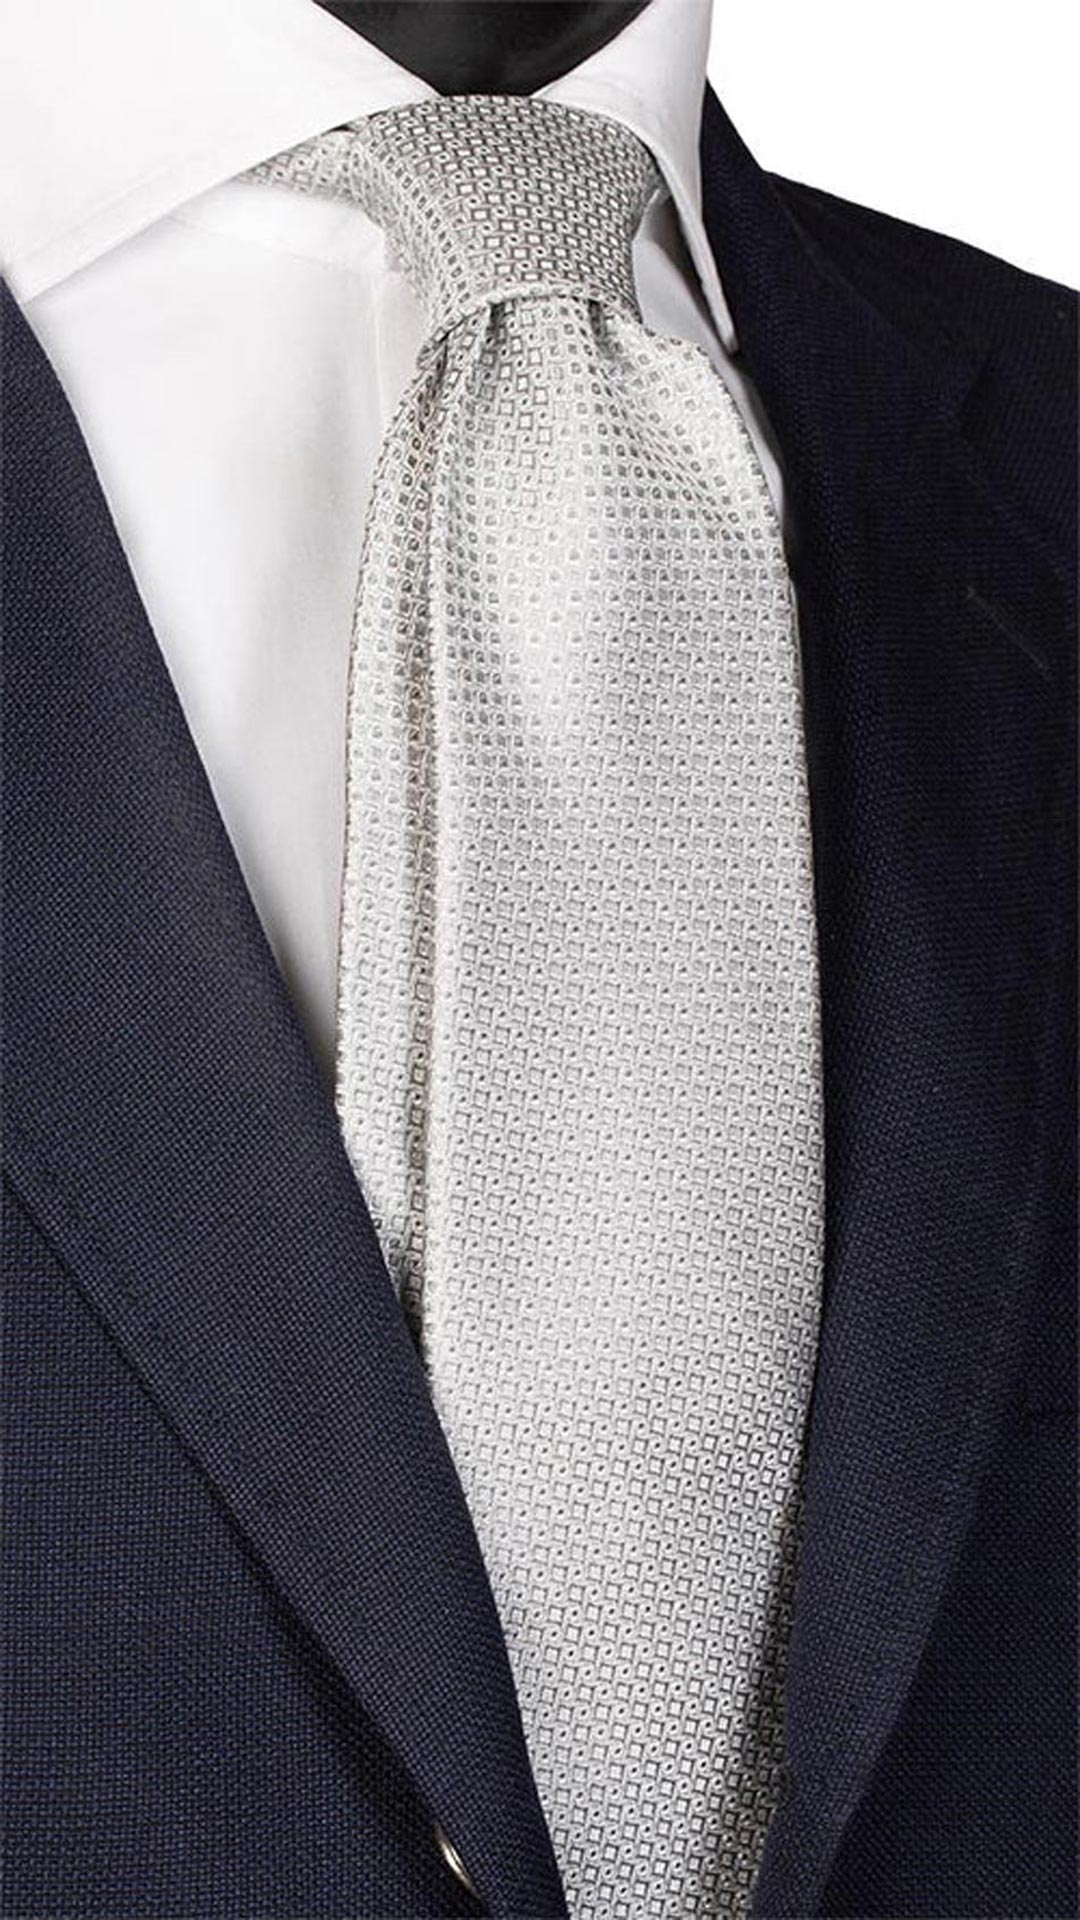 Cravatta da Cerimonia di Seta Grigia Fantasia Tono su Tono CY5891 Made in Italy Graffeo Cravatte